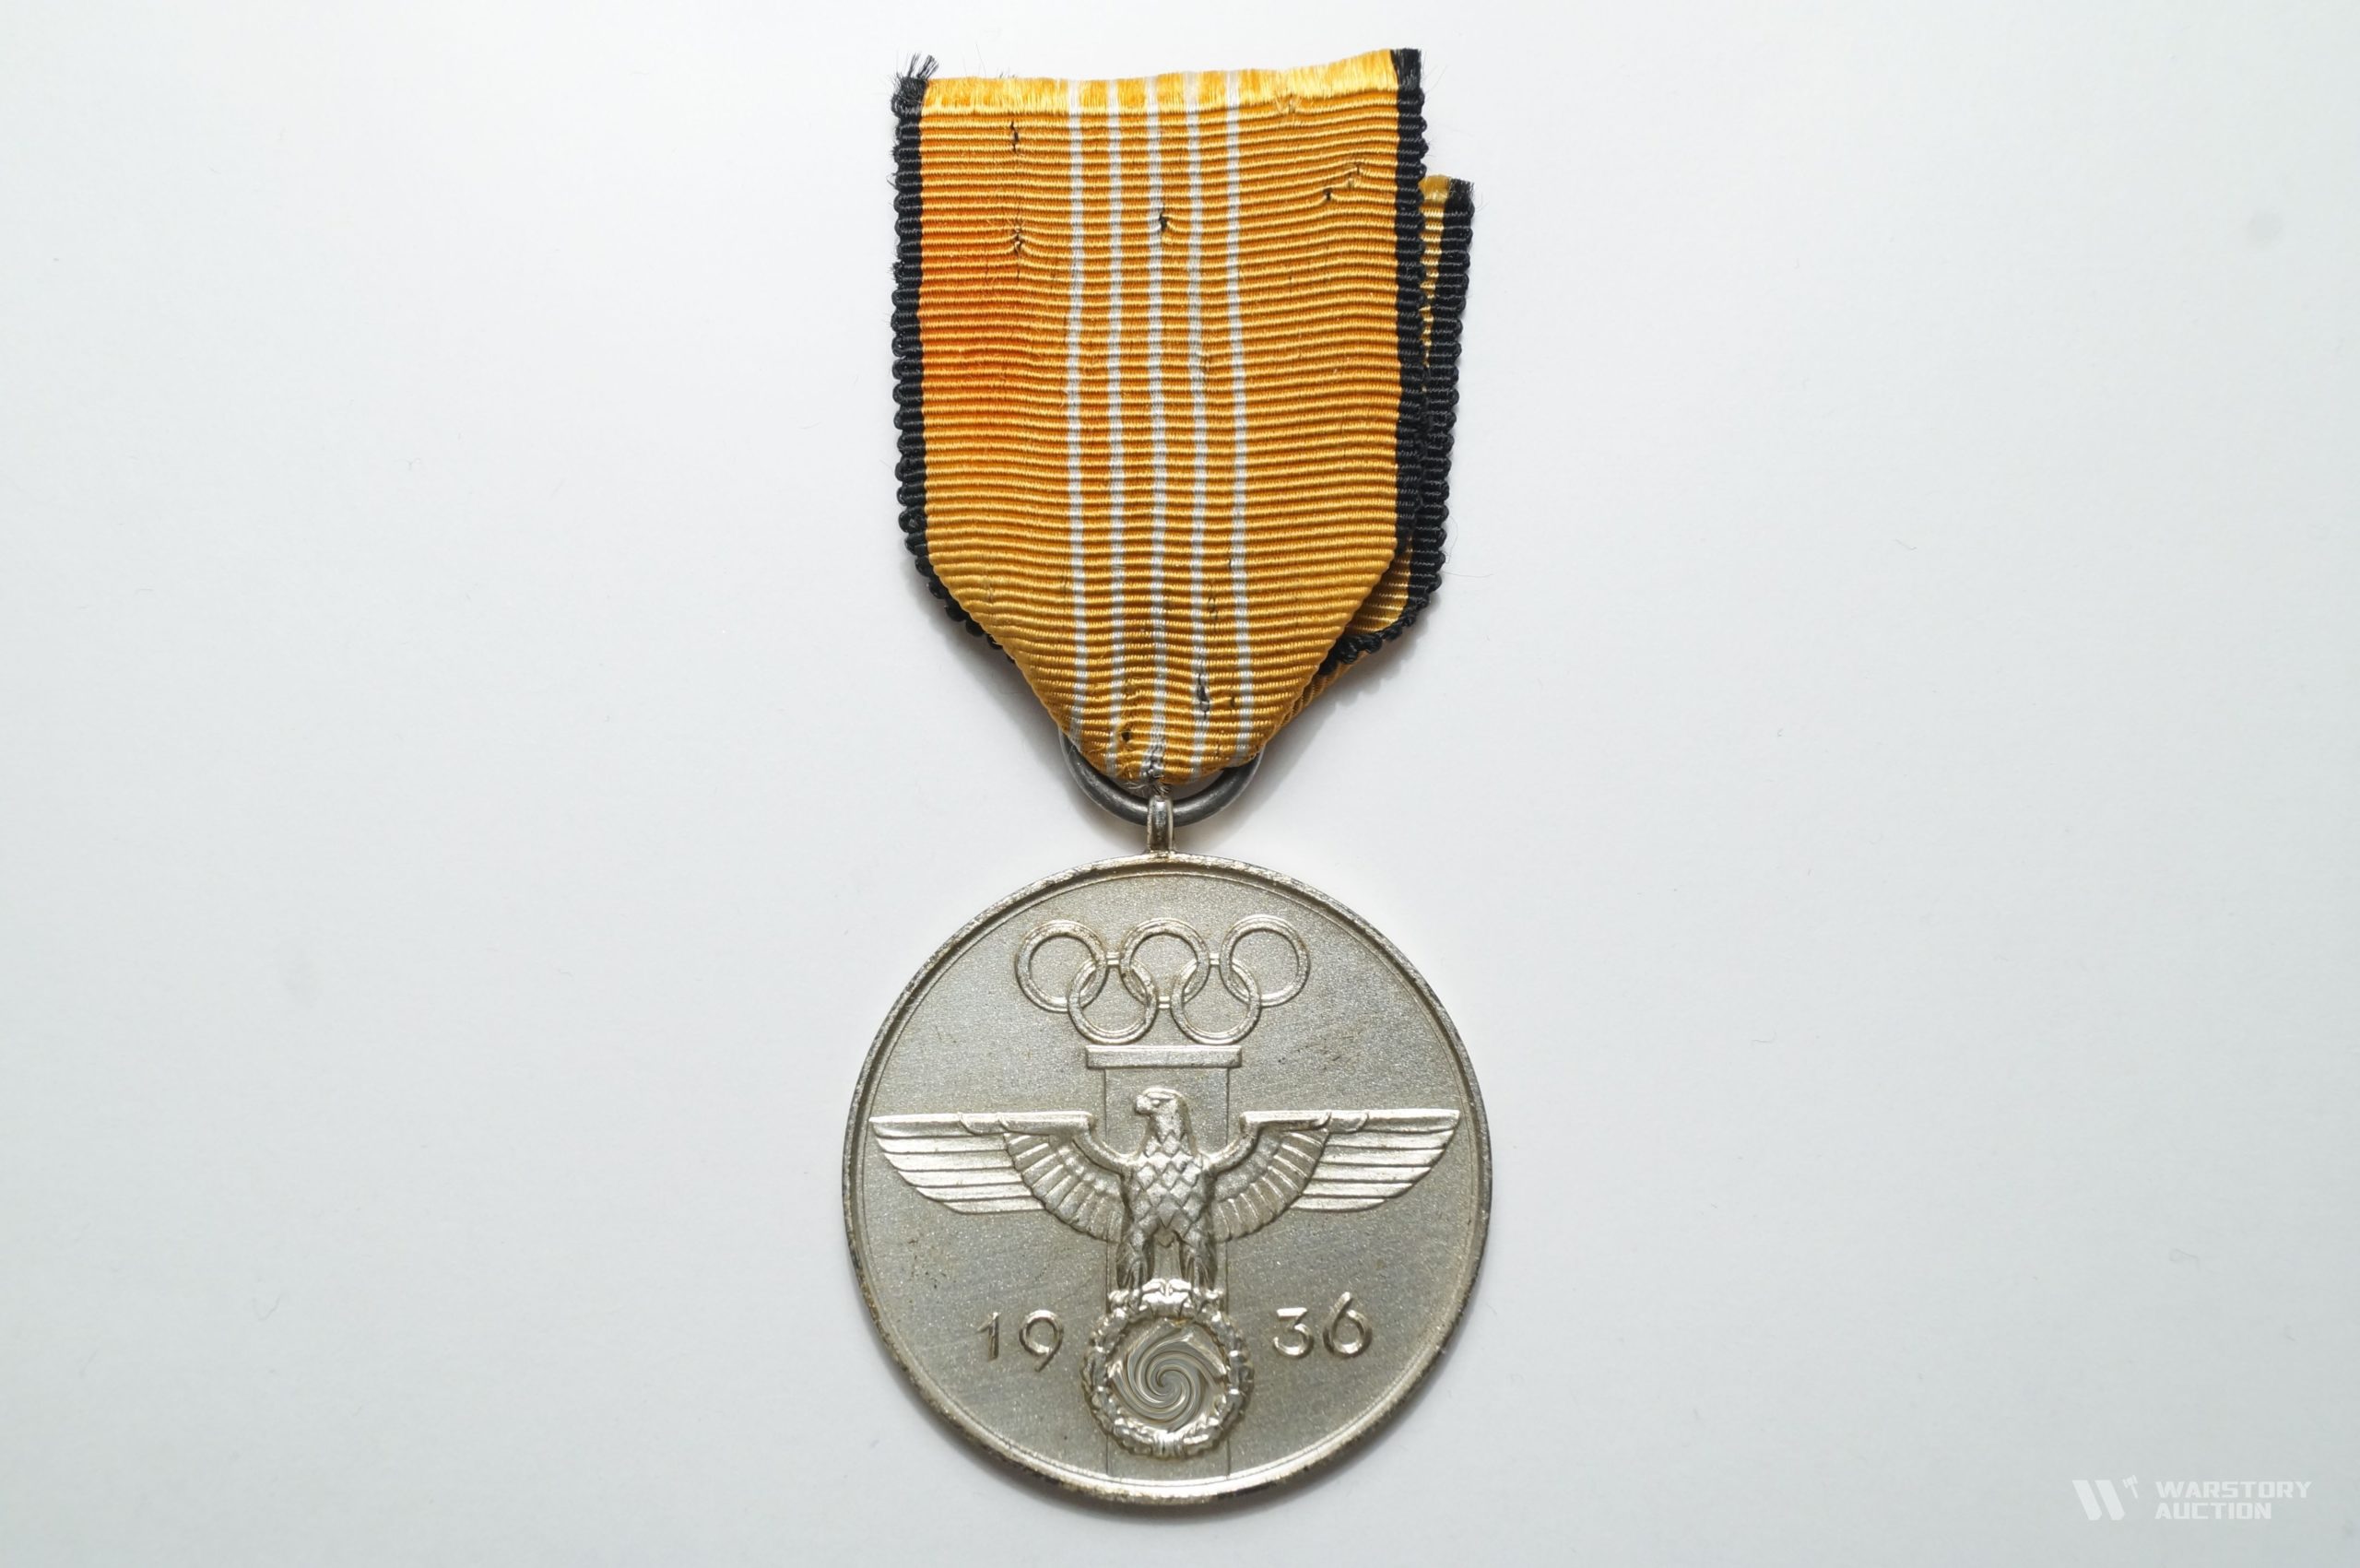 Медаль для принимавших участие в организации Олимпийских игр 1936 г. в Берлине(Третья степень).